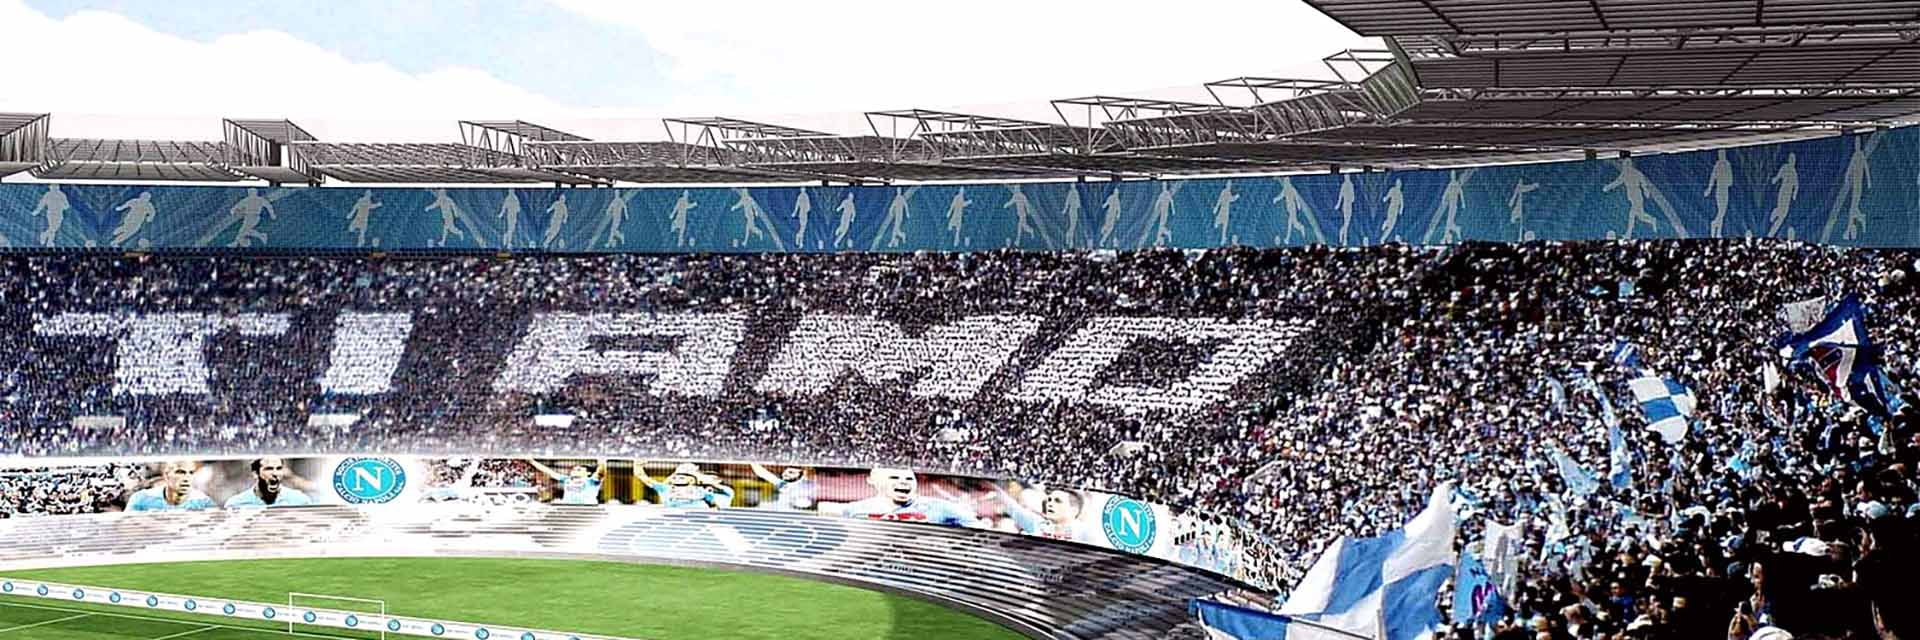 SSC Napoli - Torino FC, 5 marsden 20:45